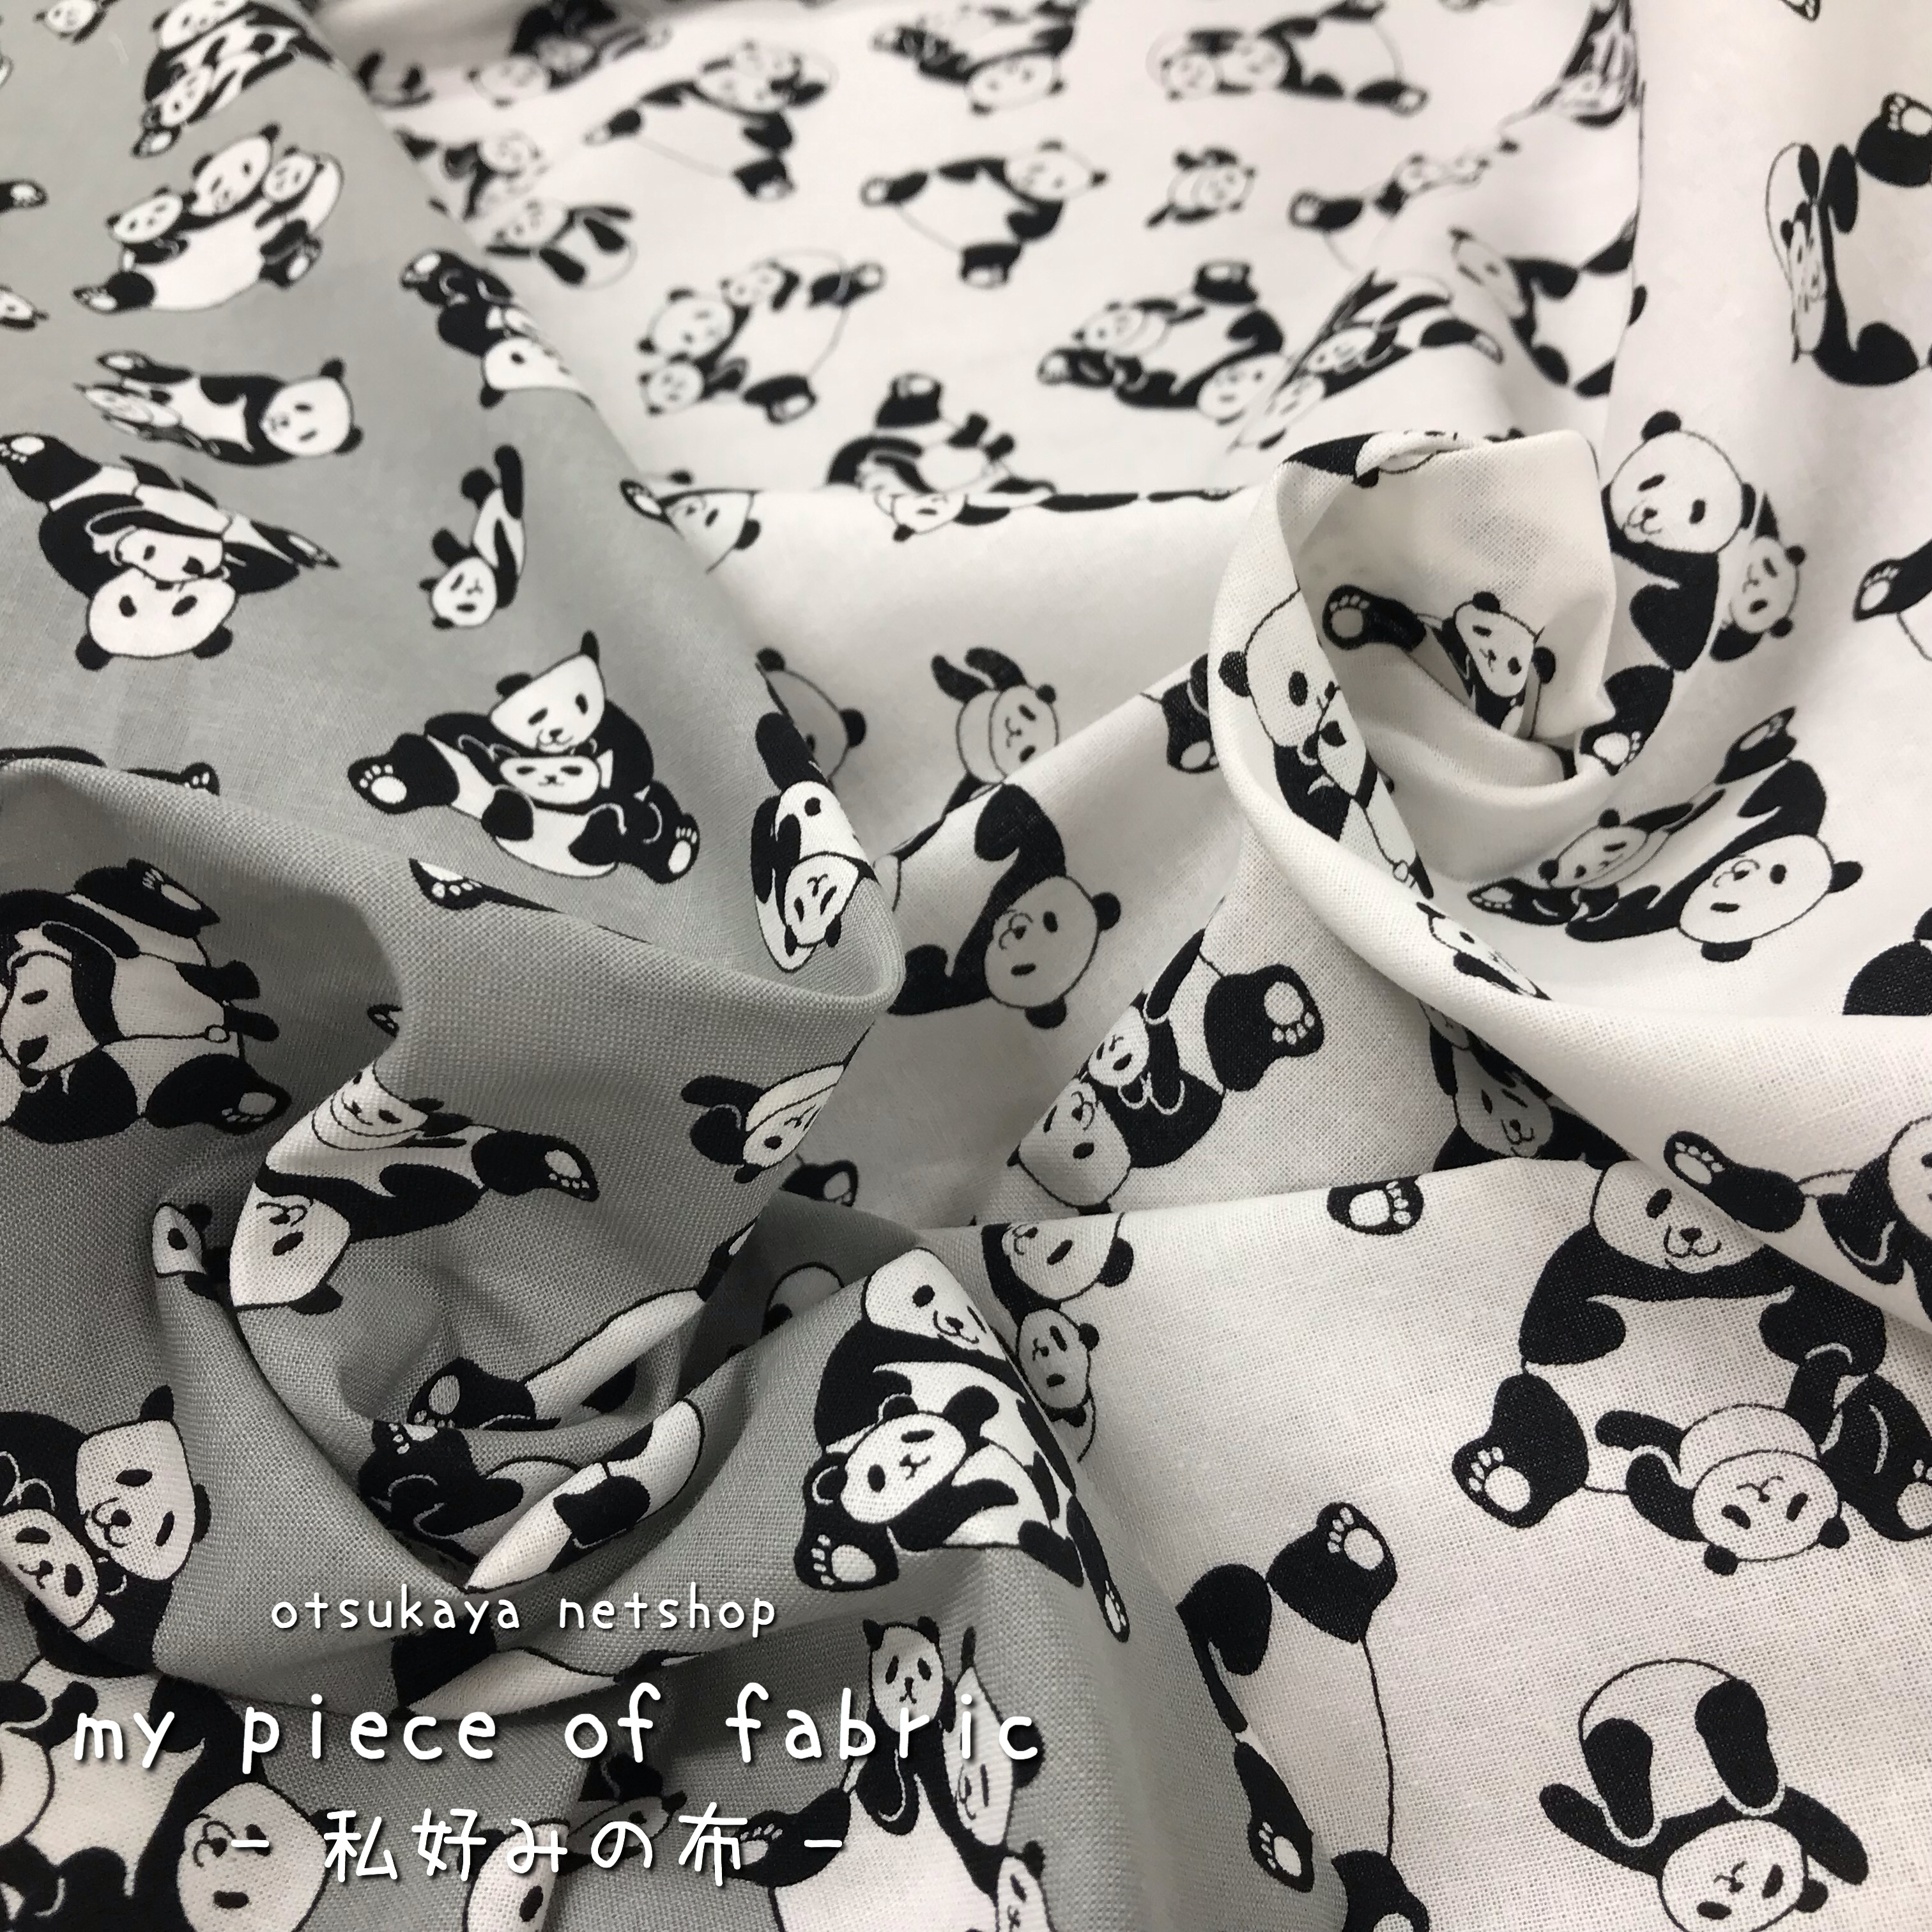 親子パンダの可愛い布地 My Piece Of Fabric 私好みの布 パンダのシーチング 850249 2 布が安い 生地の通販 大塚屋ネットショップブログ